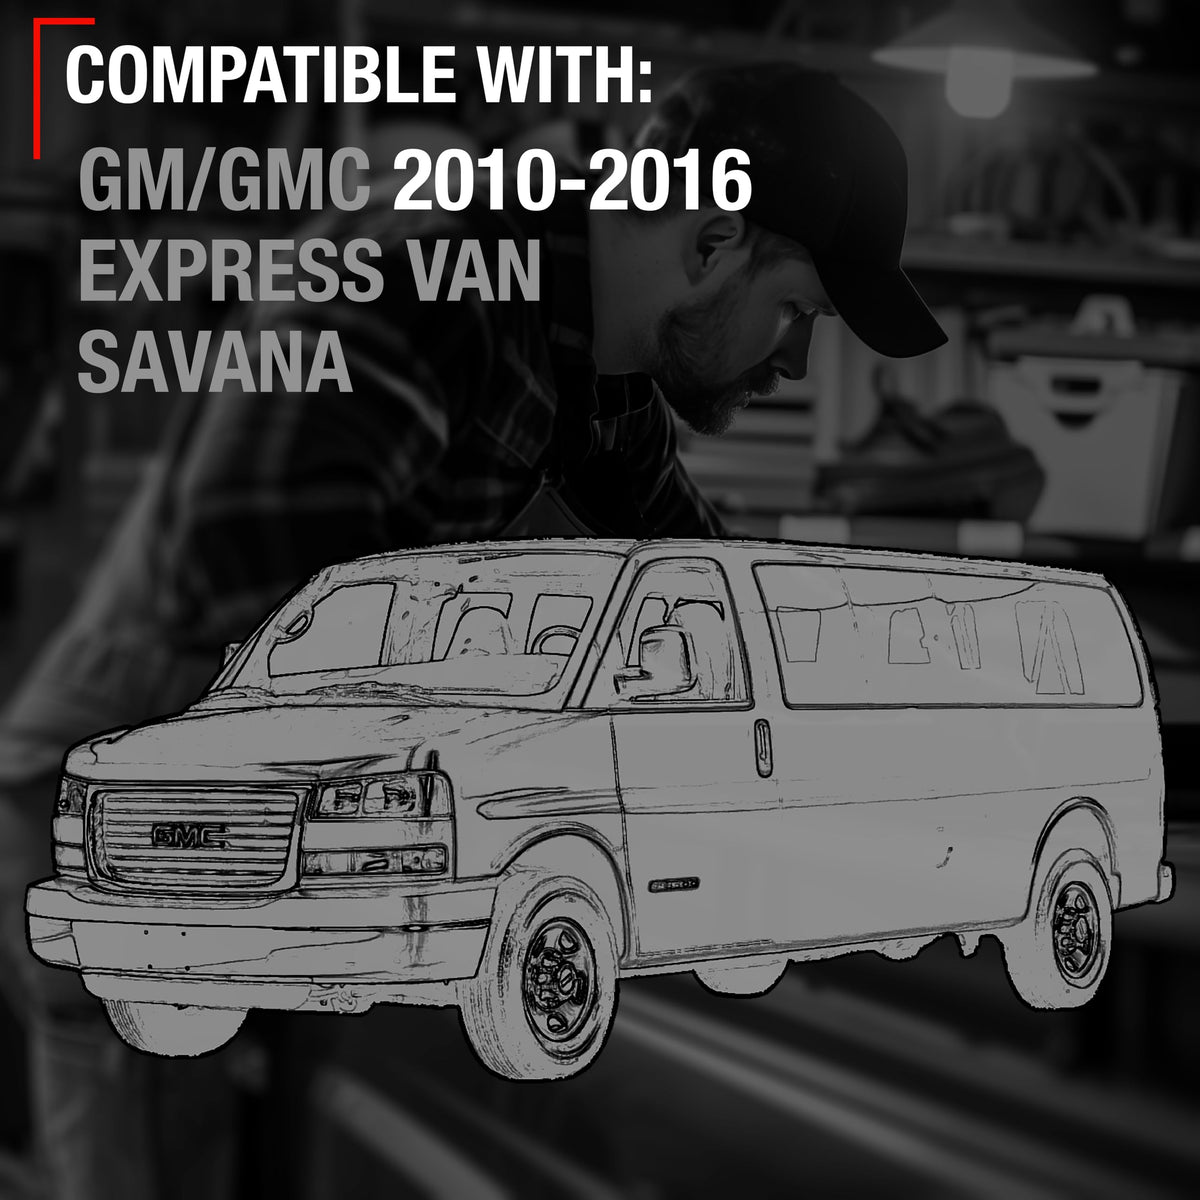 TRUBUILT1 AUTOMOTIVE Exterior Door Handle, Front Left Driver Side - Compatible with 2010-2016 GM Express Van, GMC Savana - Textured Black - OEM 25989398, 97745